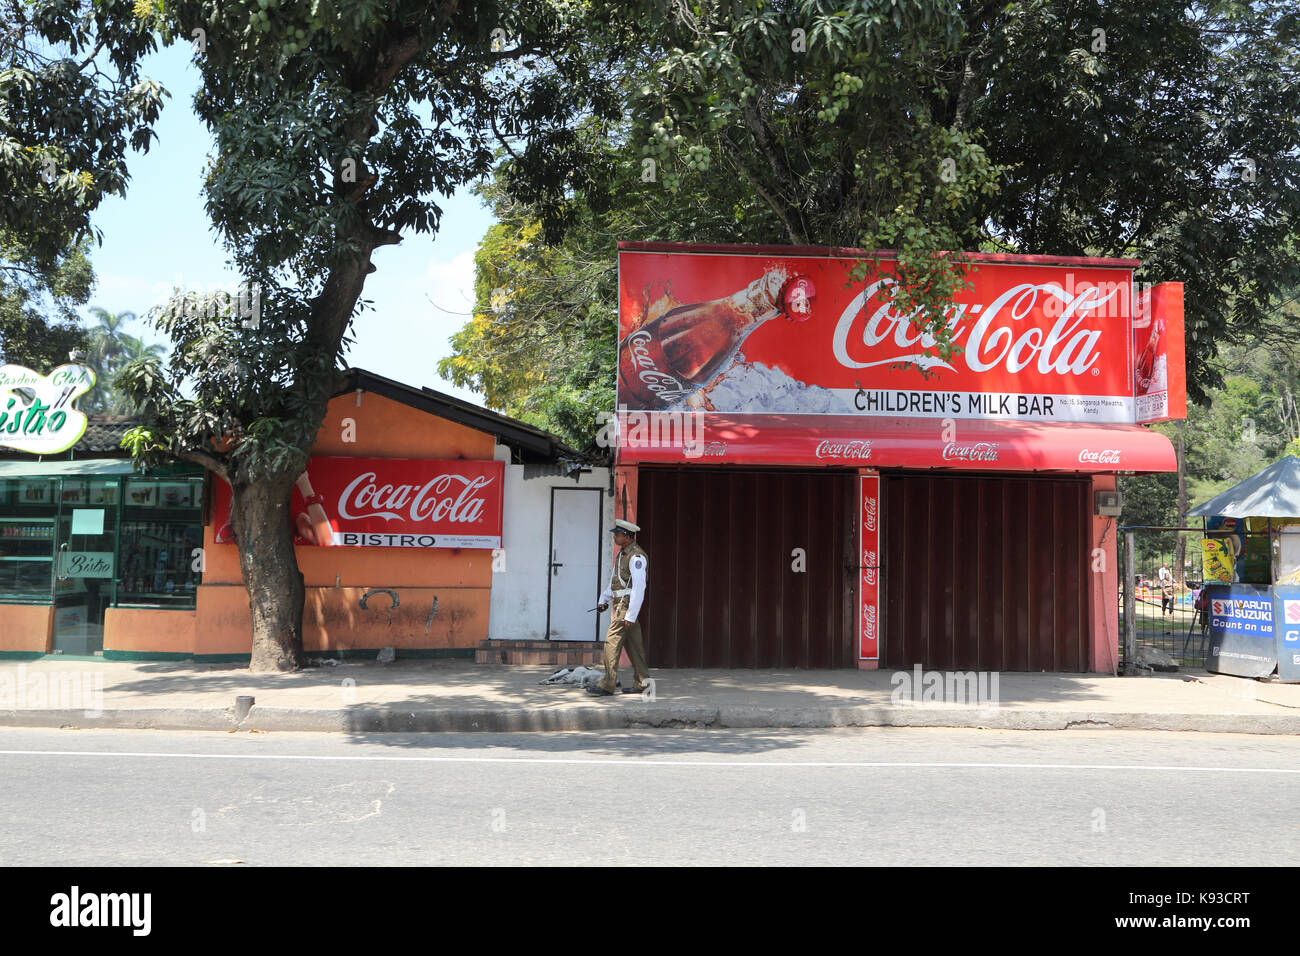 La ville de Kandy au Sri Lanka policier à pied par Children's Milk Bar Coca Cola Publicité Banque D'Images